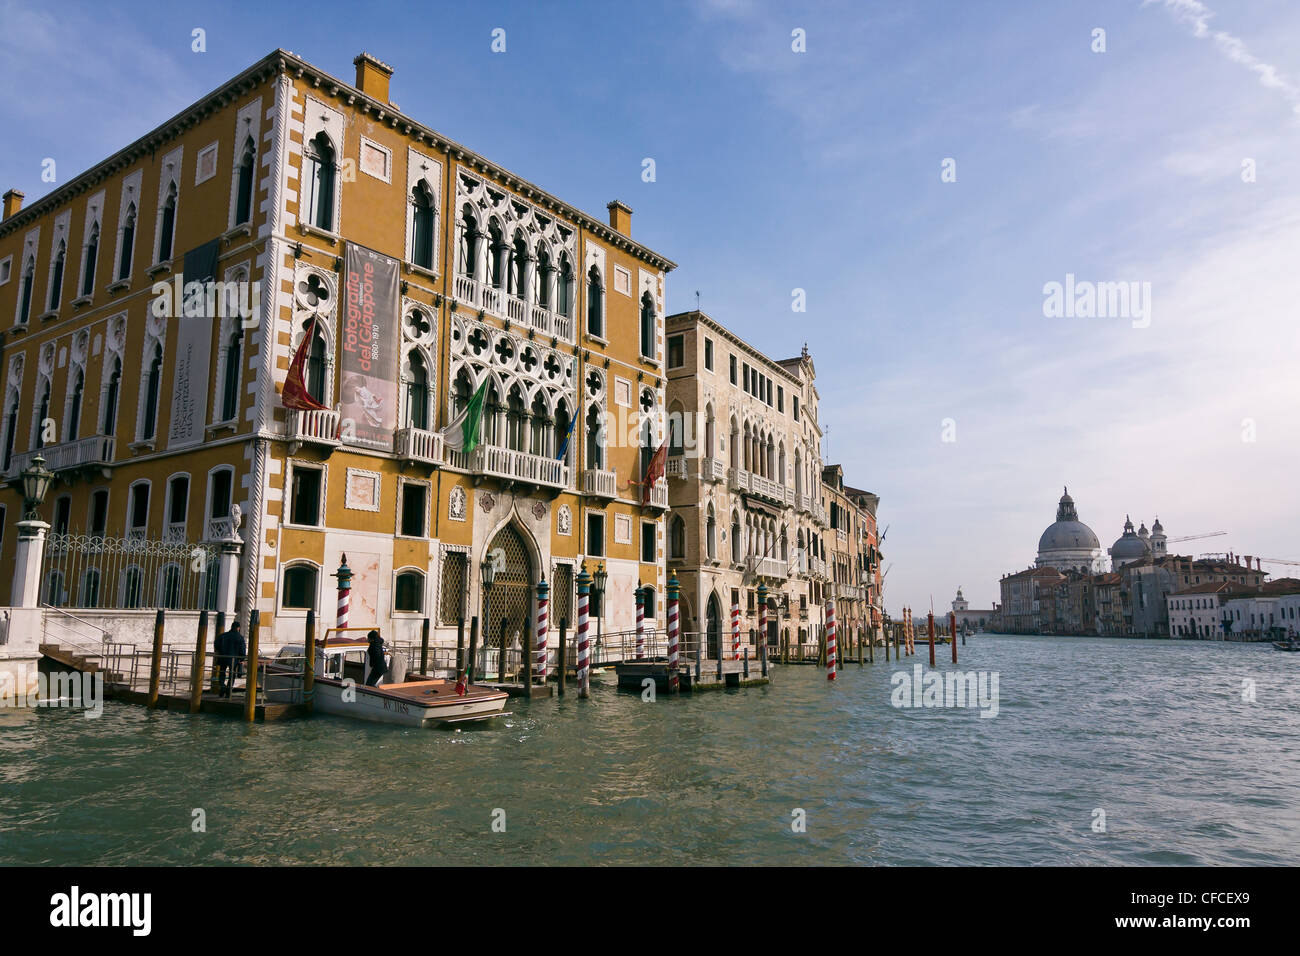 Facciata di Cavalli Franchetti Palace (XVI secolo) sul Grand Canal - Venezia, Venezia, Italia e Europa Foto Stock